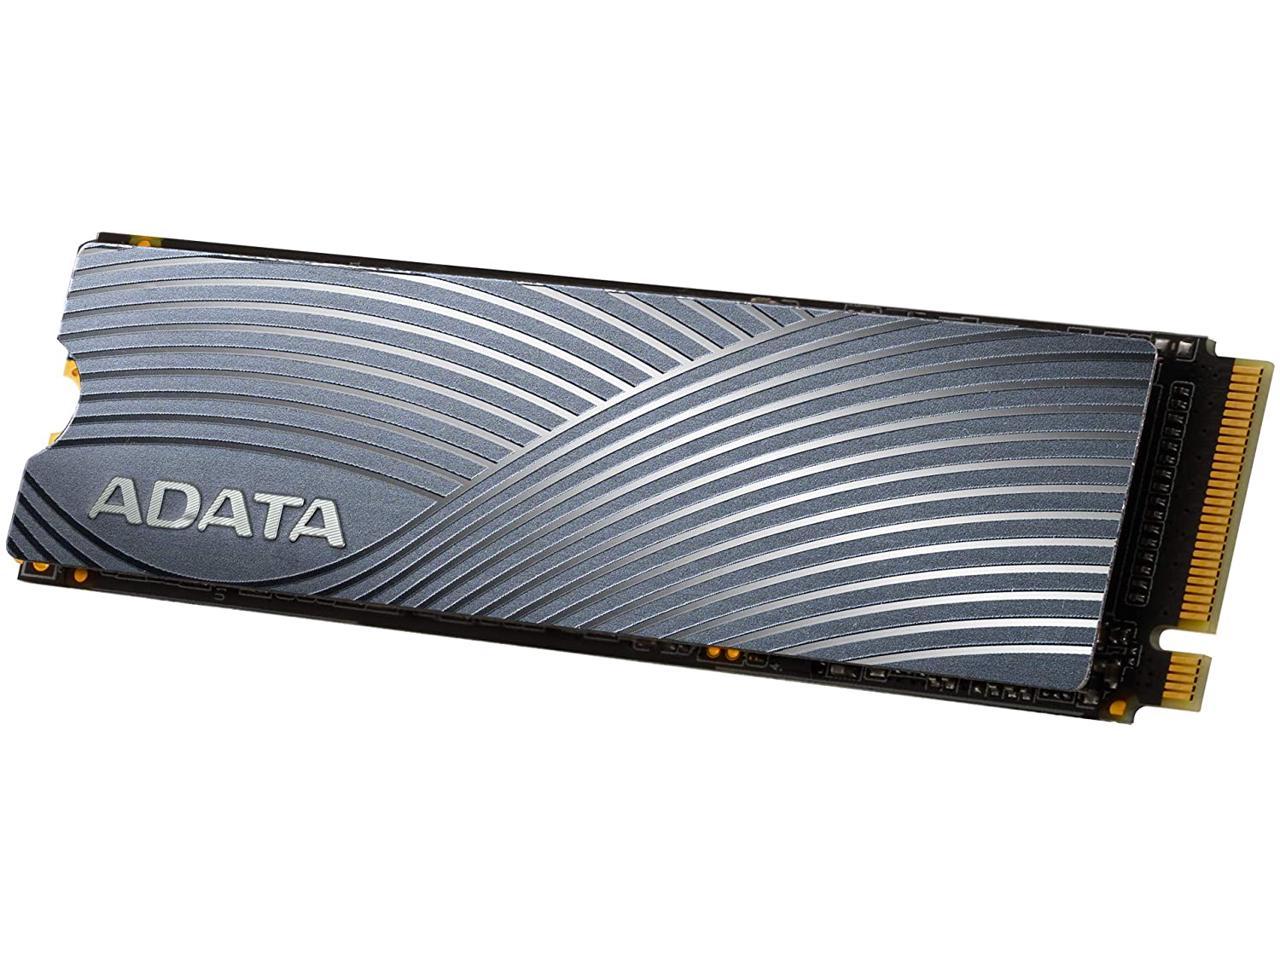 ADATA Swordfish 1TB PCIe Gen3x4 M.2 2280, 3D-NAND Internal Solid State Drive